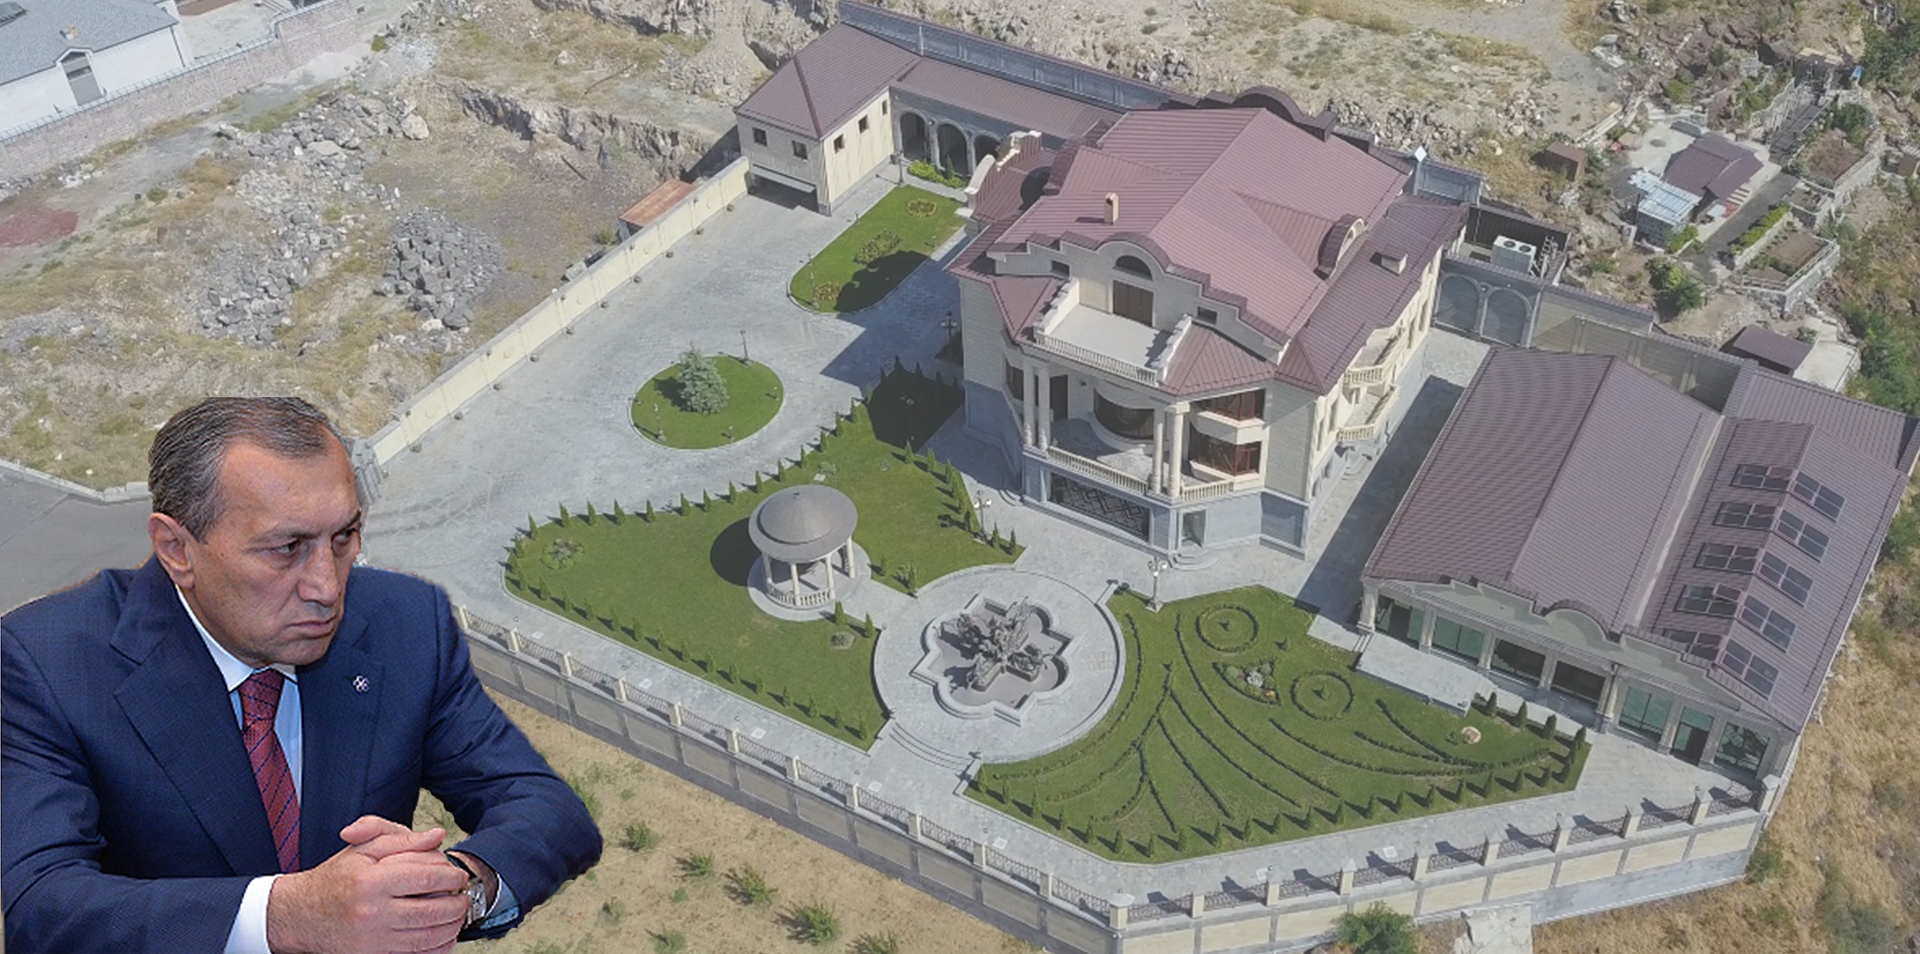 Սուրիկ Խաչատրյանն իր առանձնատունը կառուցել է առանց շինթույլտվության. քրգործ է հարուցվել